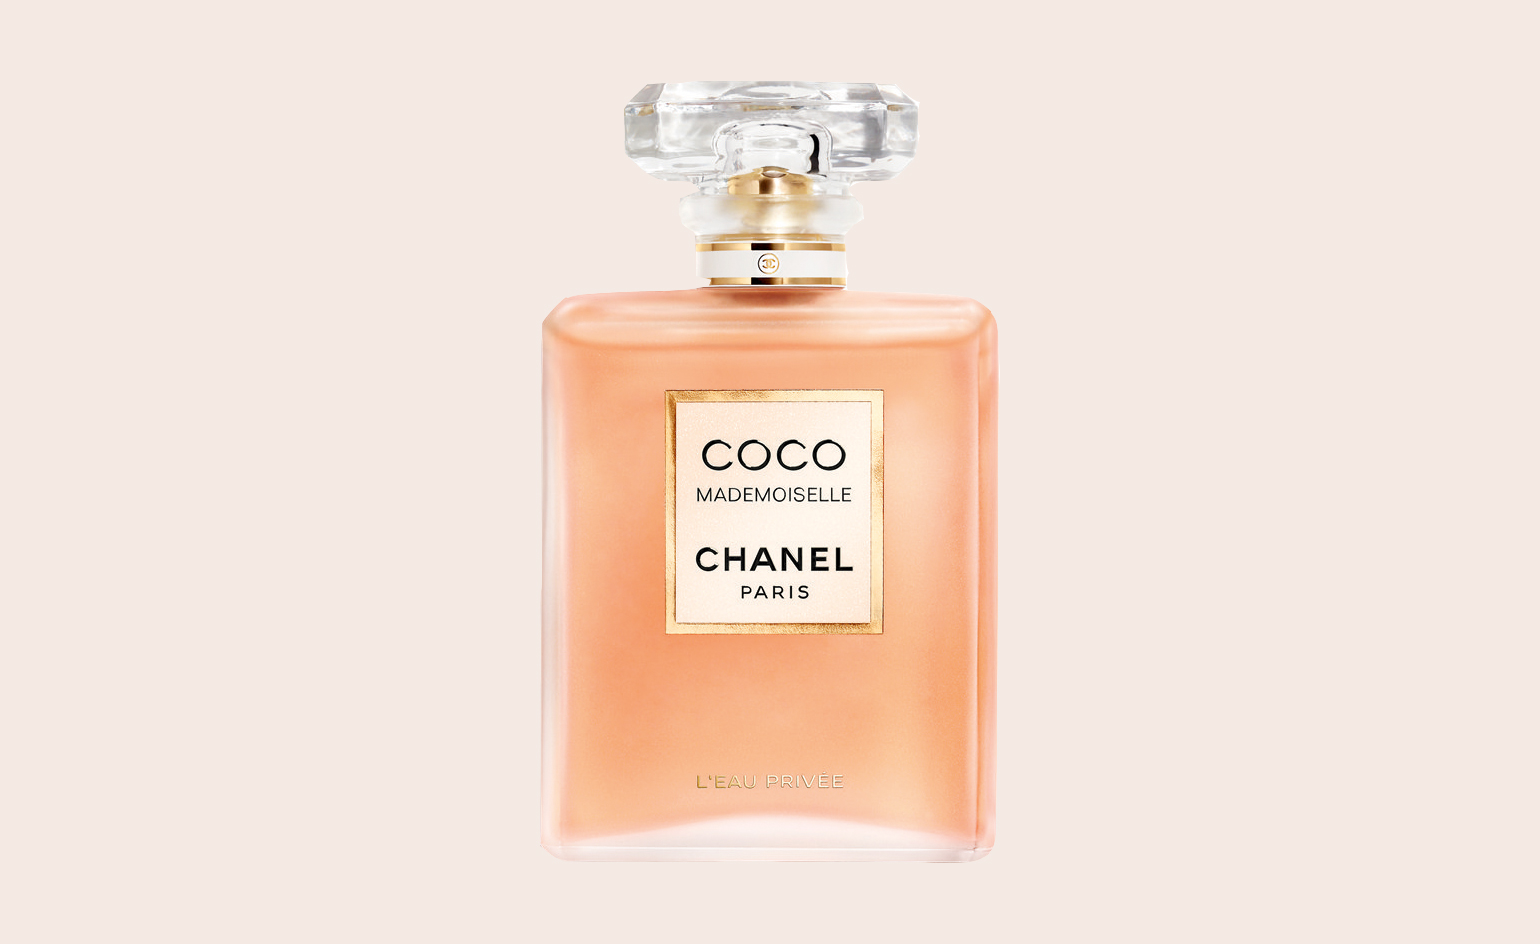 Chanel COCO MADEMOISELLE Eau De Parfum Intense Vaporizer Luxury Fragrances  200 Ml  lupongovph